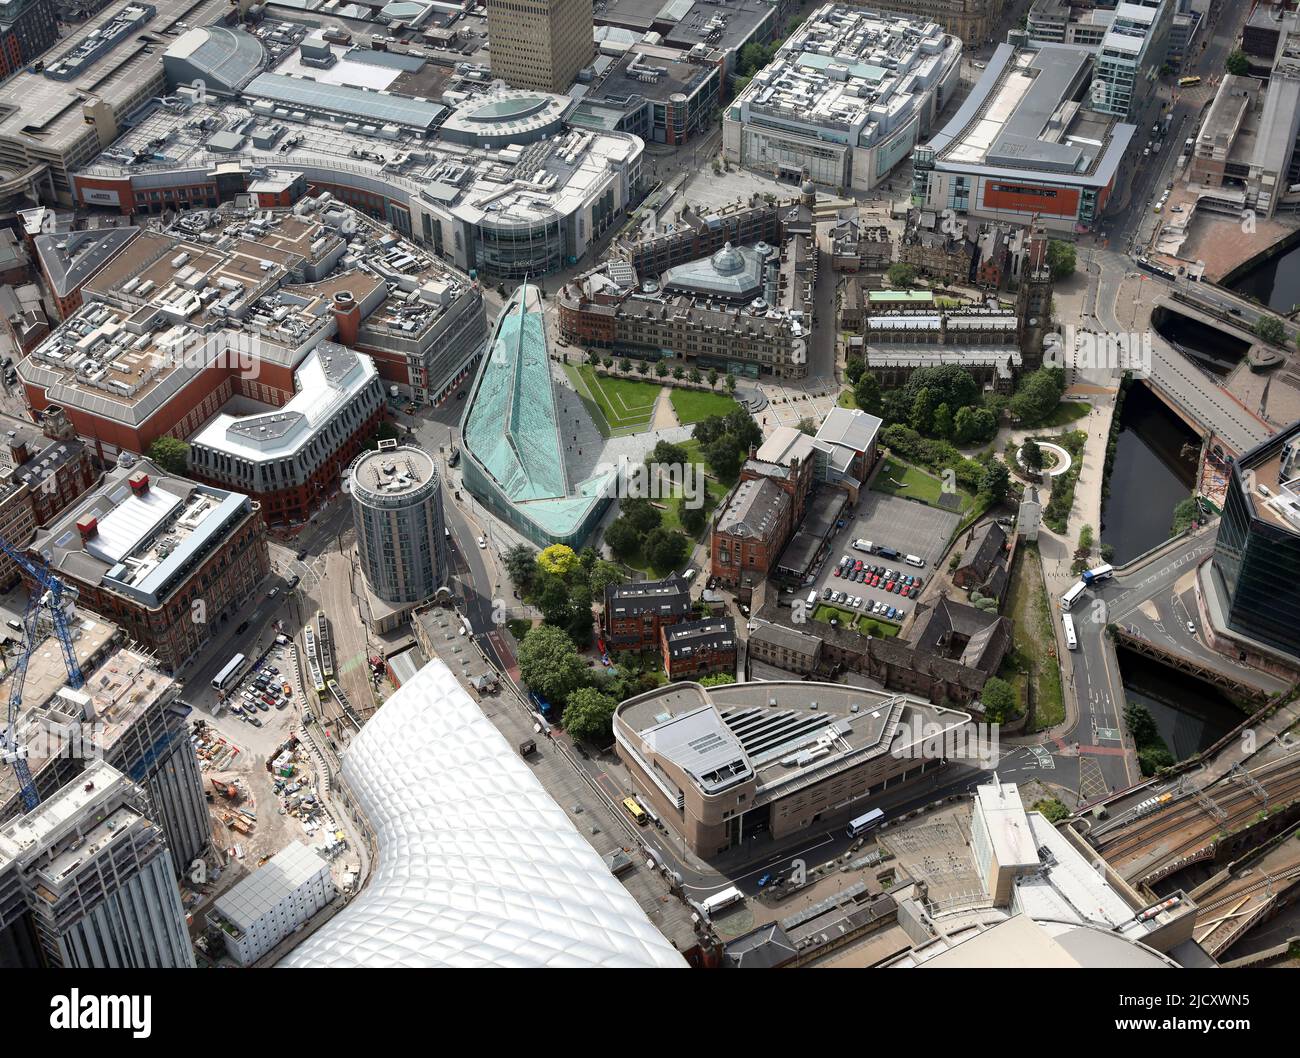 Luftaufnahme des Stadtzentrums von Manchester: Cathedral Gardens, National Football Museum (grünes Gebäude), Manchester Cathedral & Glade of Light Memorial Park Stockfoto